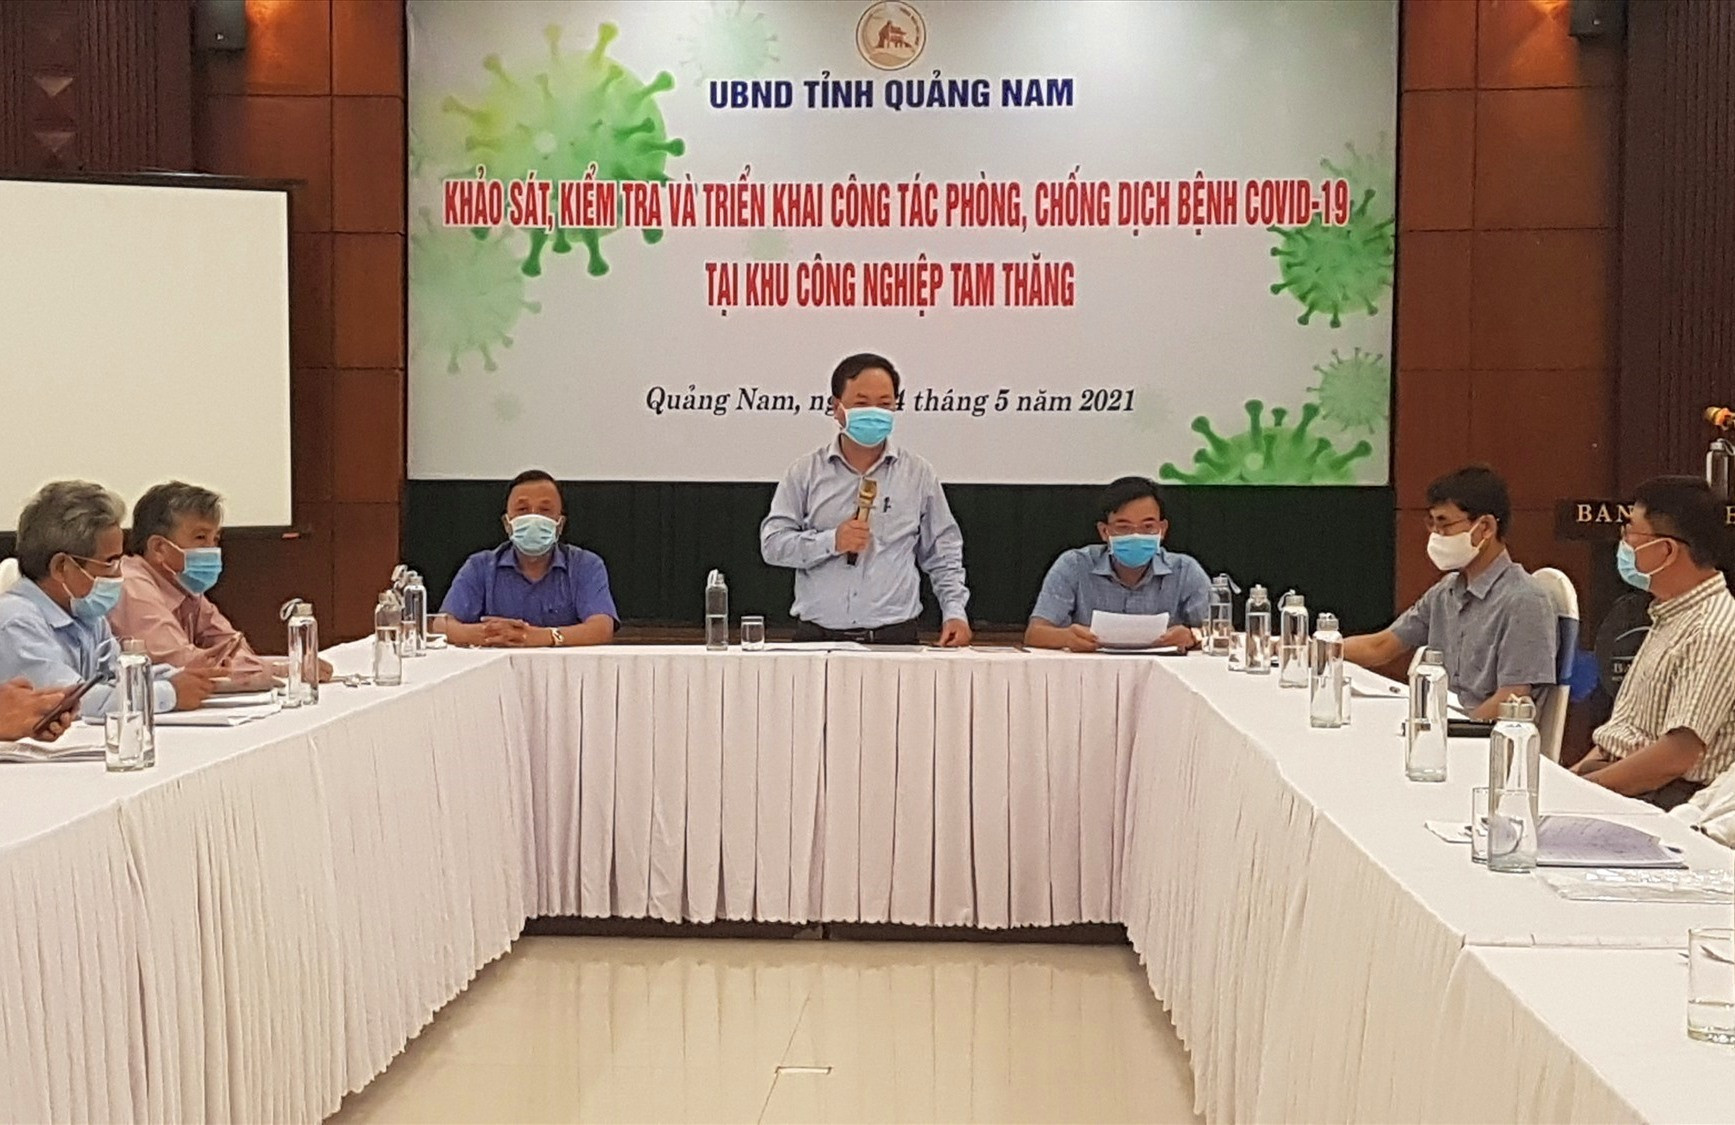 Phó Chủ tịch UBND tỉnh Nguyễn Hồng Quang làm việc với chủ đầu tư và các doanh nghiệp trong KCN Tam Thăng. Ảnh: D.L